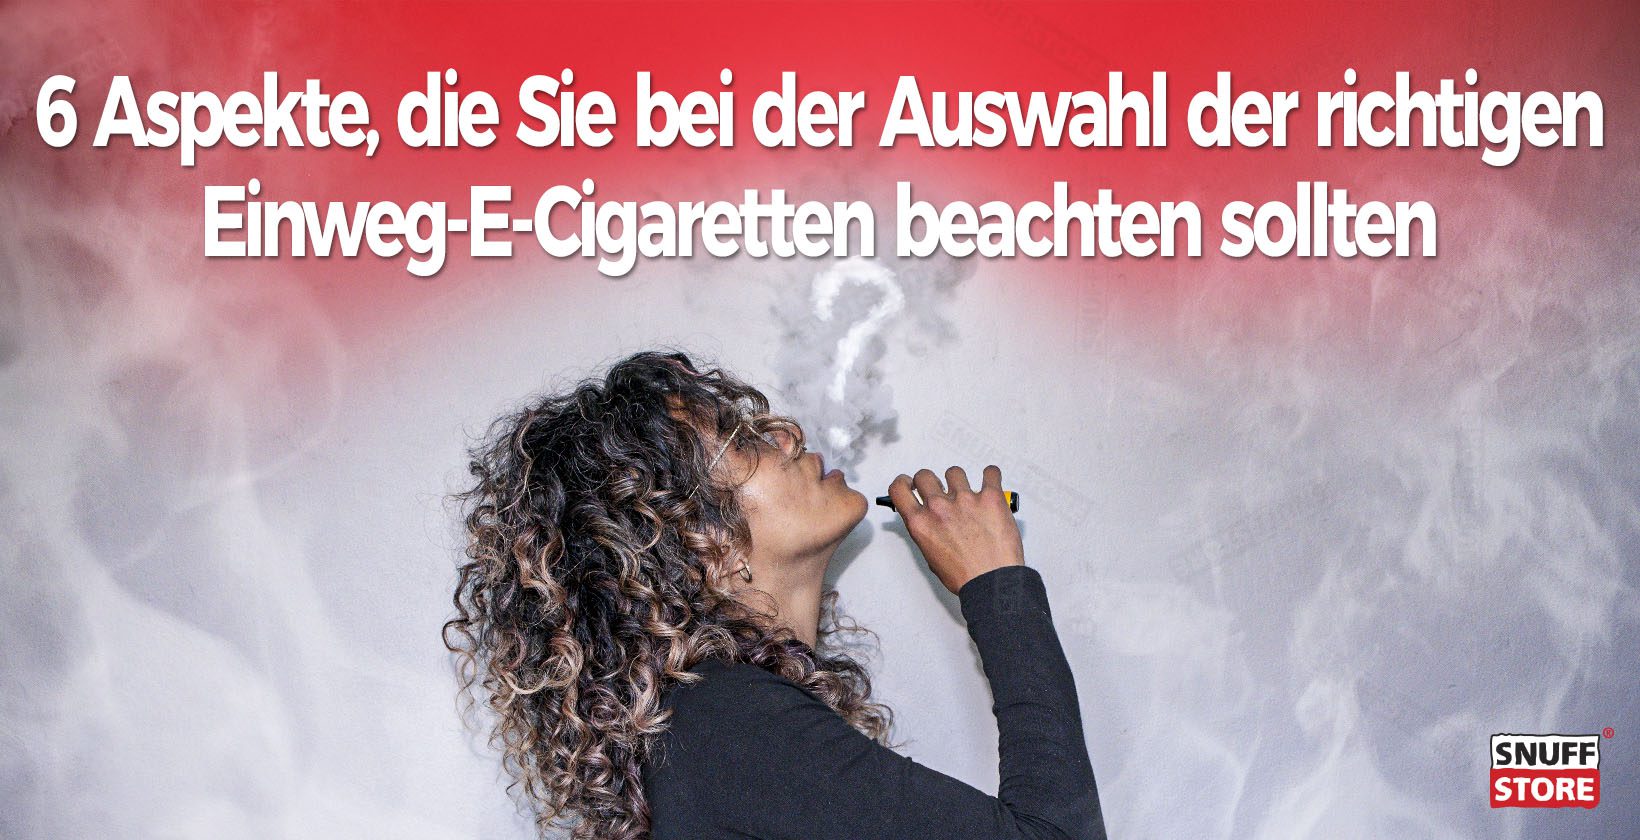 Auswahl der richtigen Einweg-E-Cigaretten